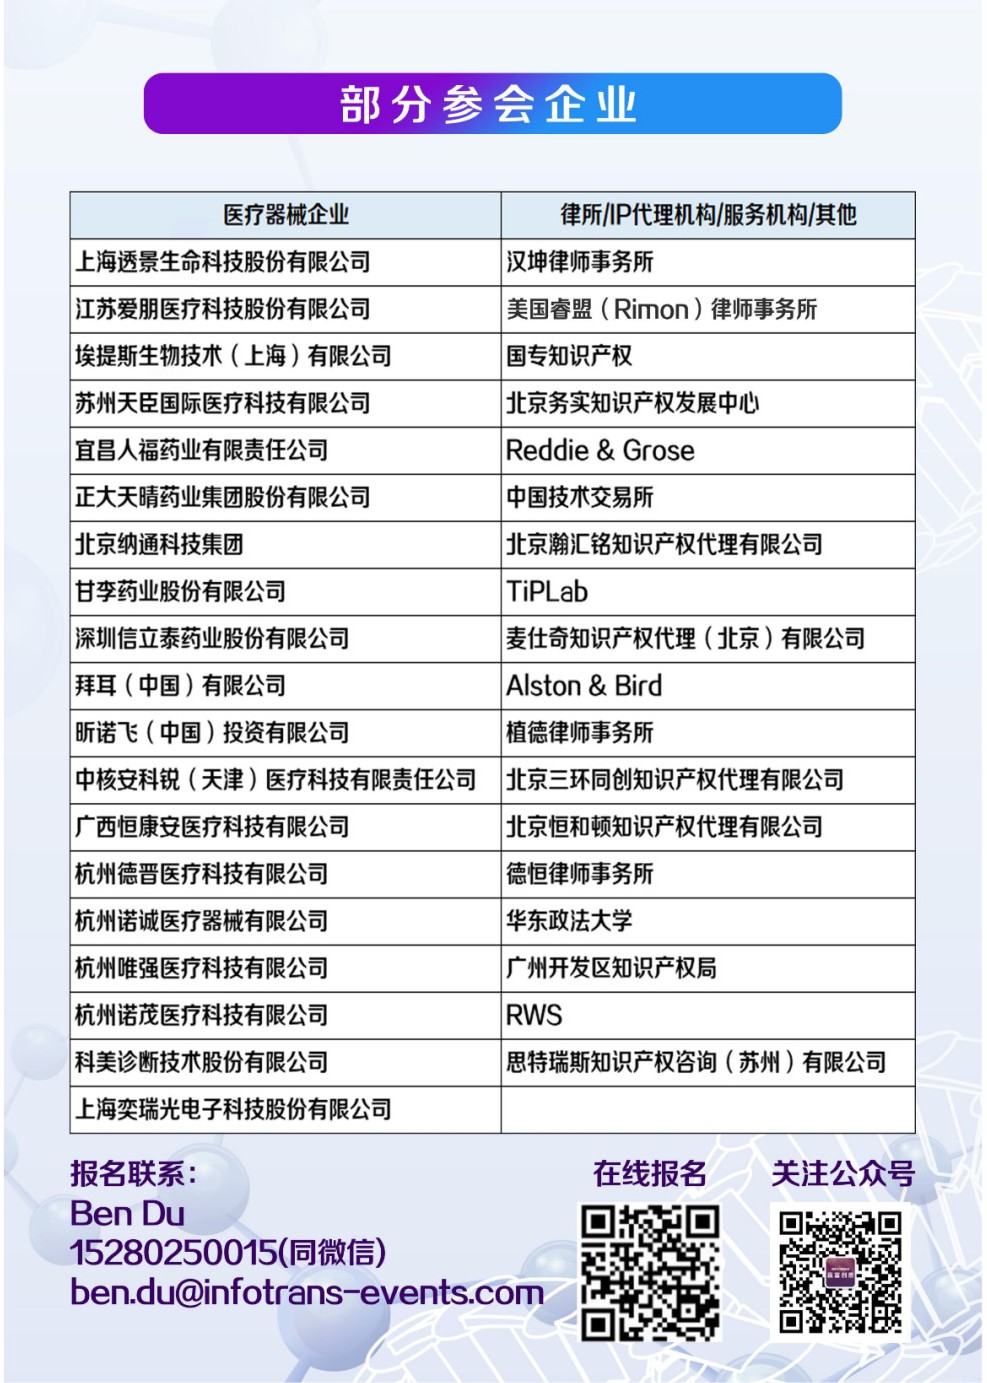 中国医疗器械知识产权峰会将于2020年7月2-3日在上海康桥万豪酒店举办